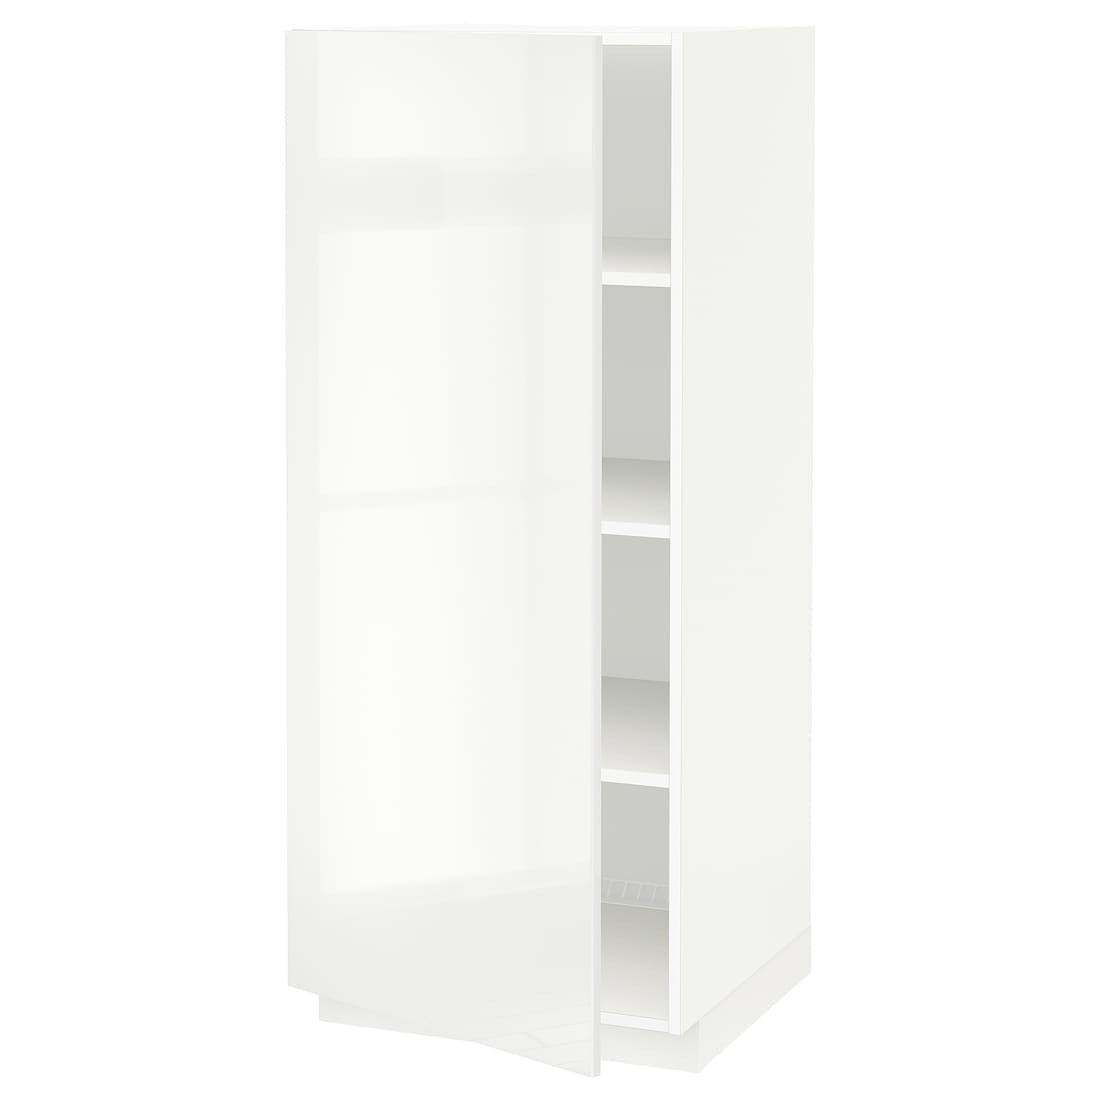 METOD МЕТОД Высокий шкаф с полками, белый / Ringhult белый, 60x60x140 см